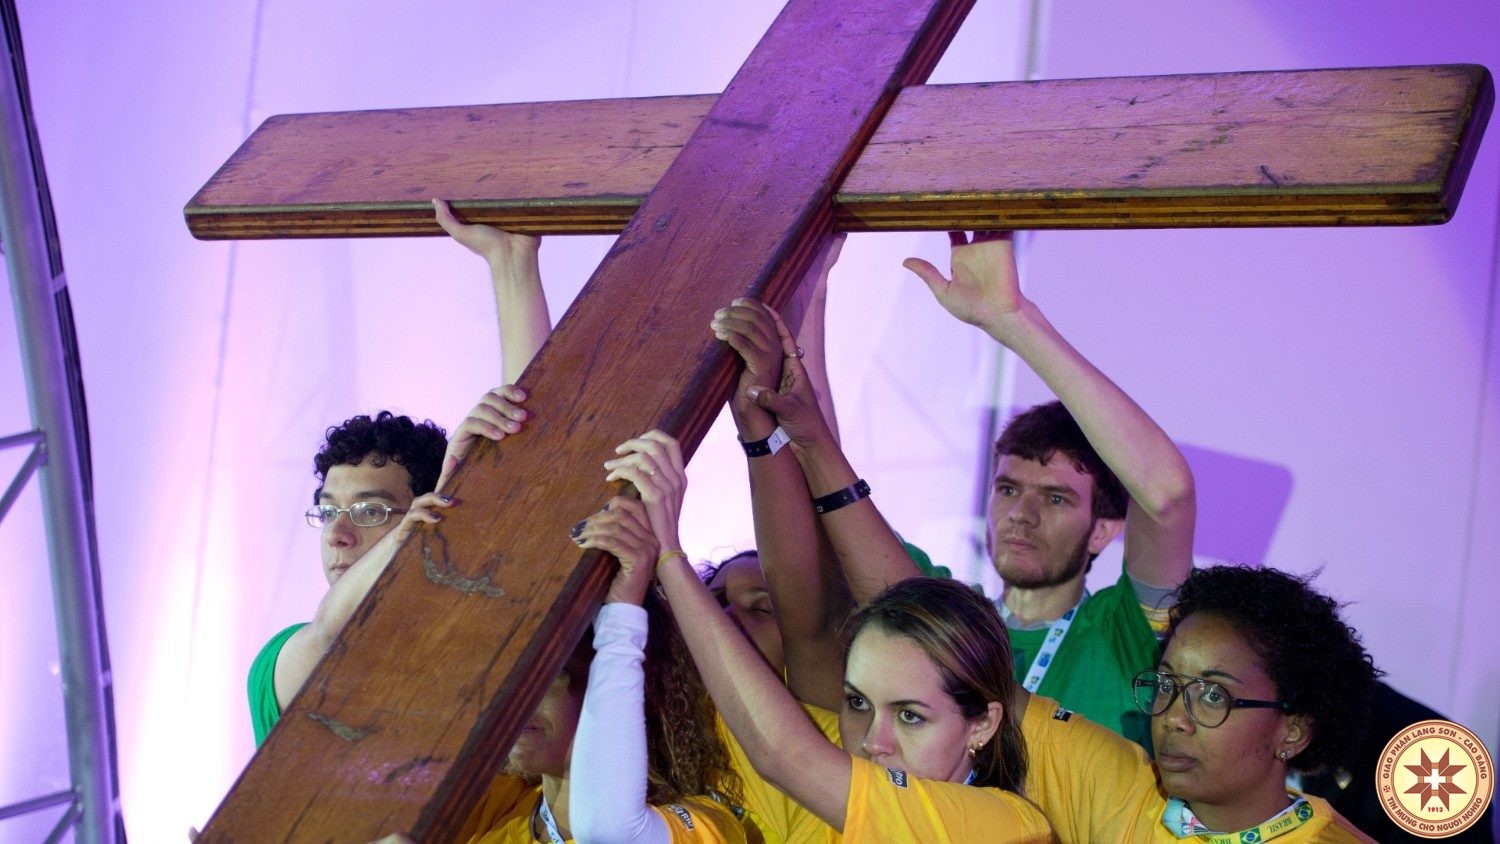 Từ tháng 11, hai biểu tượng của Ngày Giới trẻ Thế giới sẽ được rước đến các giáo phận ở Bồ Đào Nha